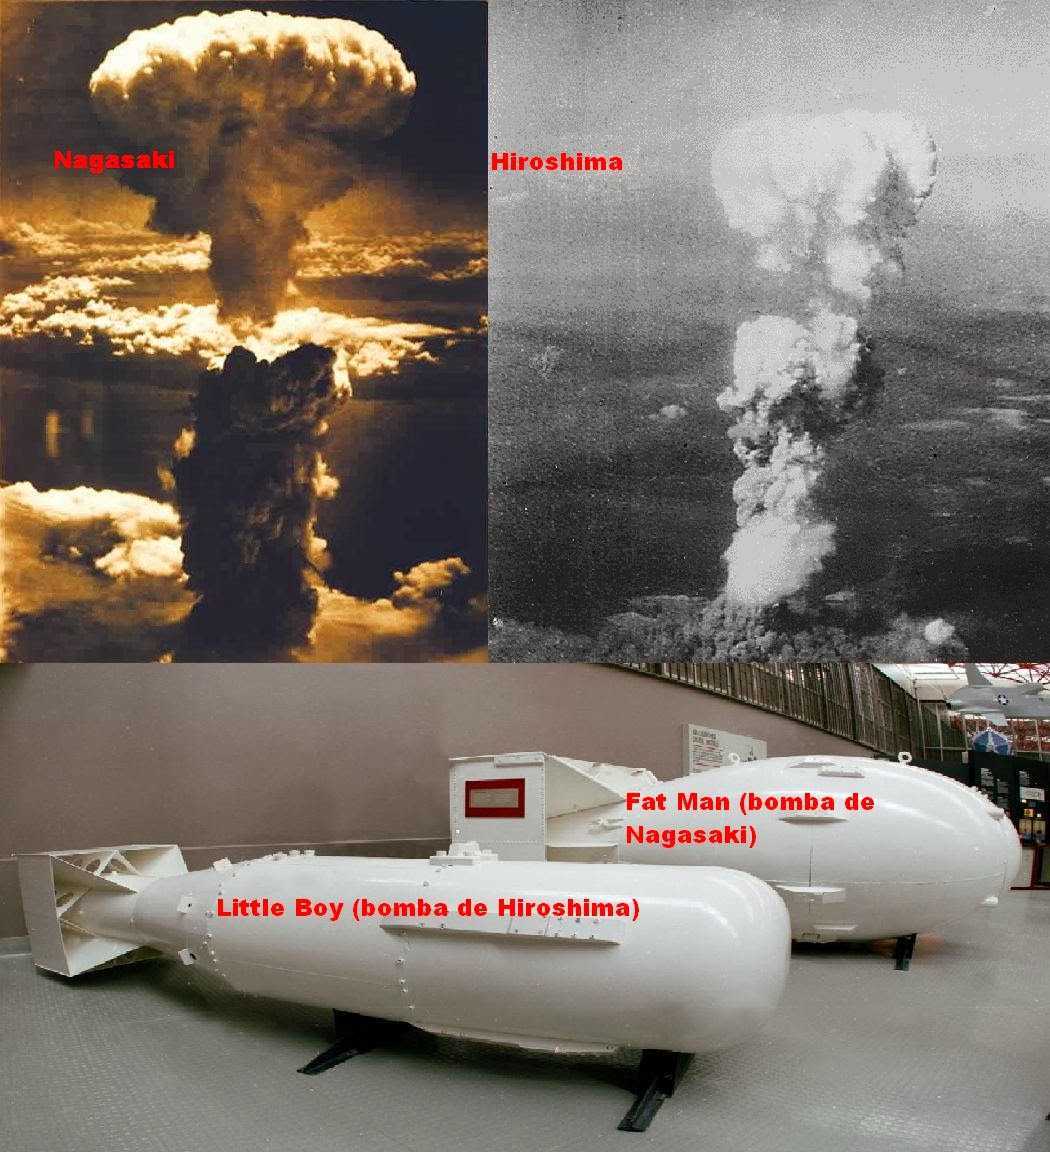 В каком году скинули хиросиму. Хиросима и Нагасаки атомная бомба. Нагасаки и Хиросима США атамнойьомба. Ядерное оружие США Хиросима Нагасаки. Япония 1945 Хиросима и Нагасаки.